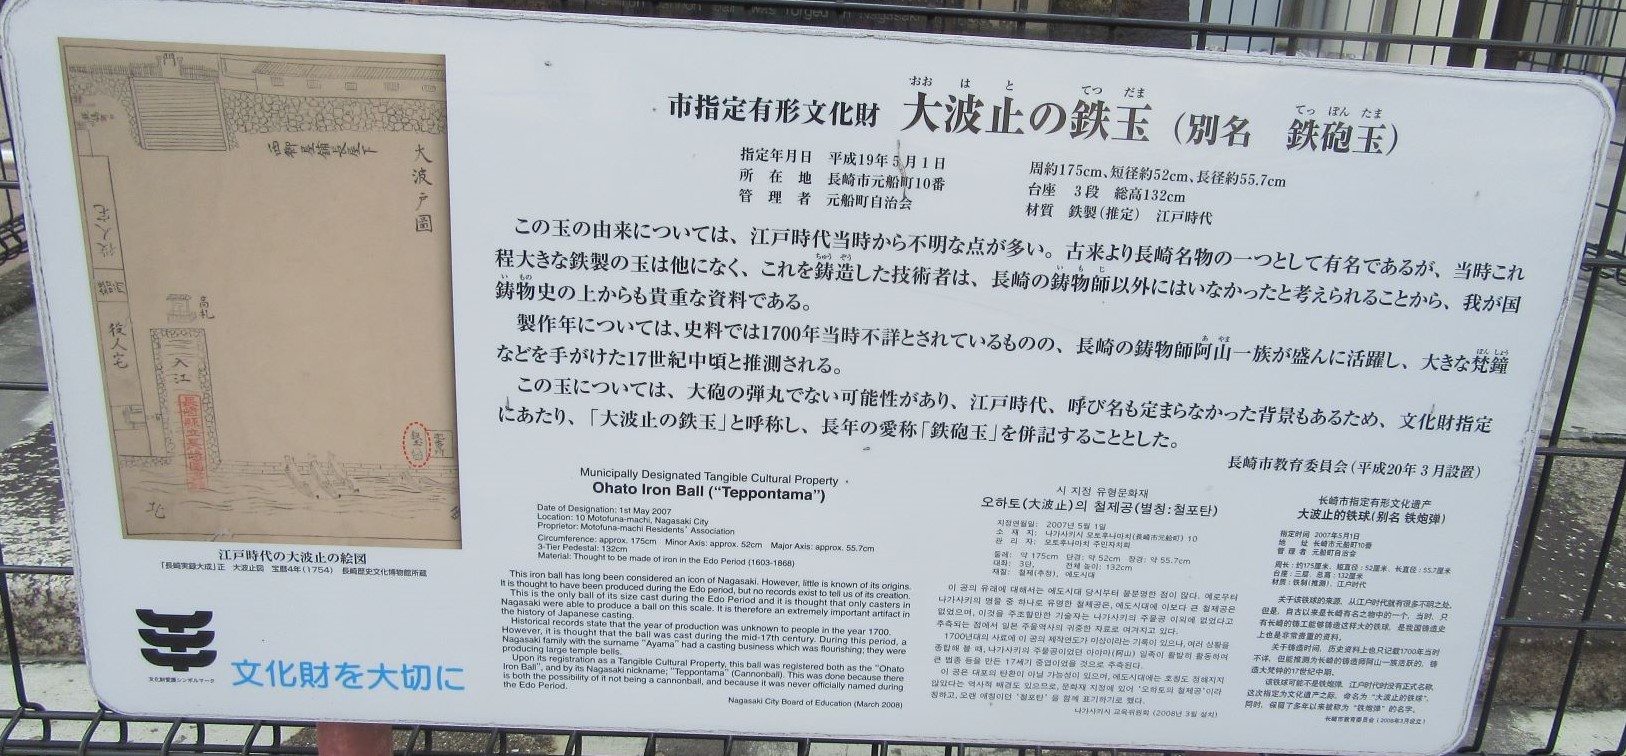 長崎市元船町にある『大波止の鉄玉』の解説。